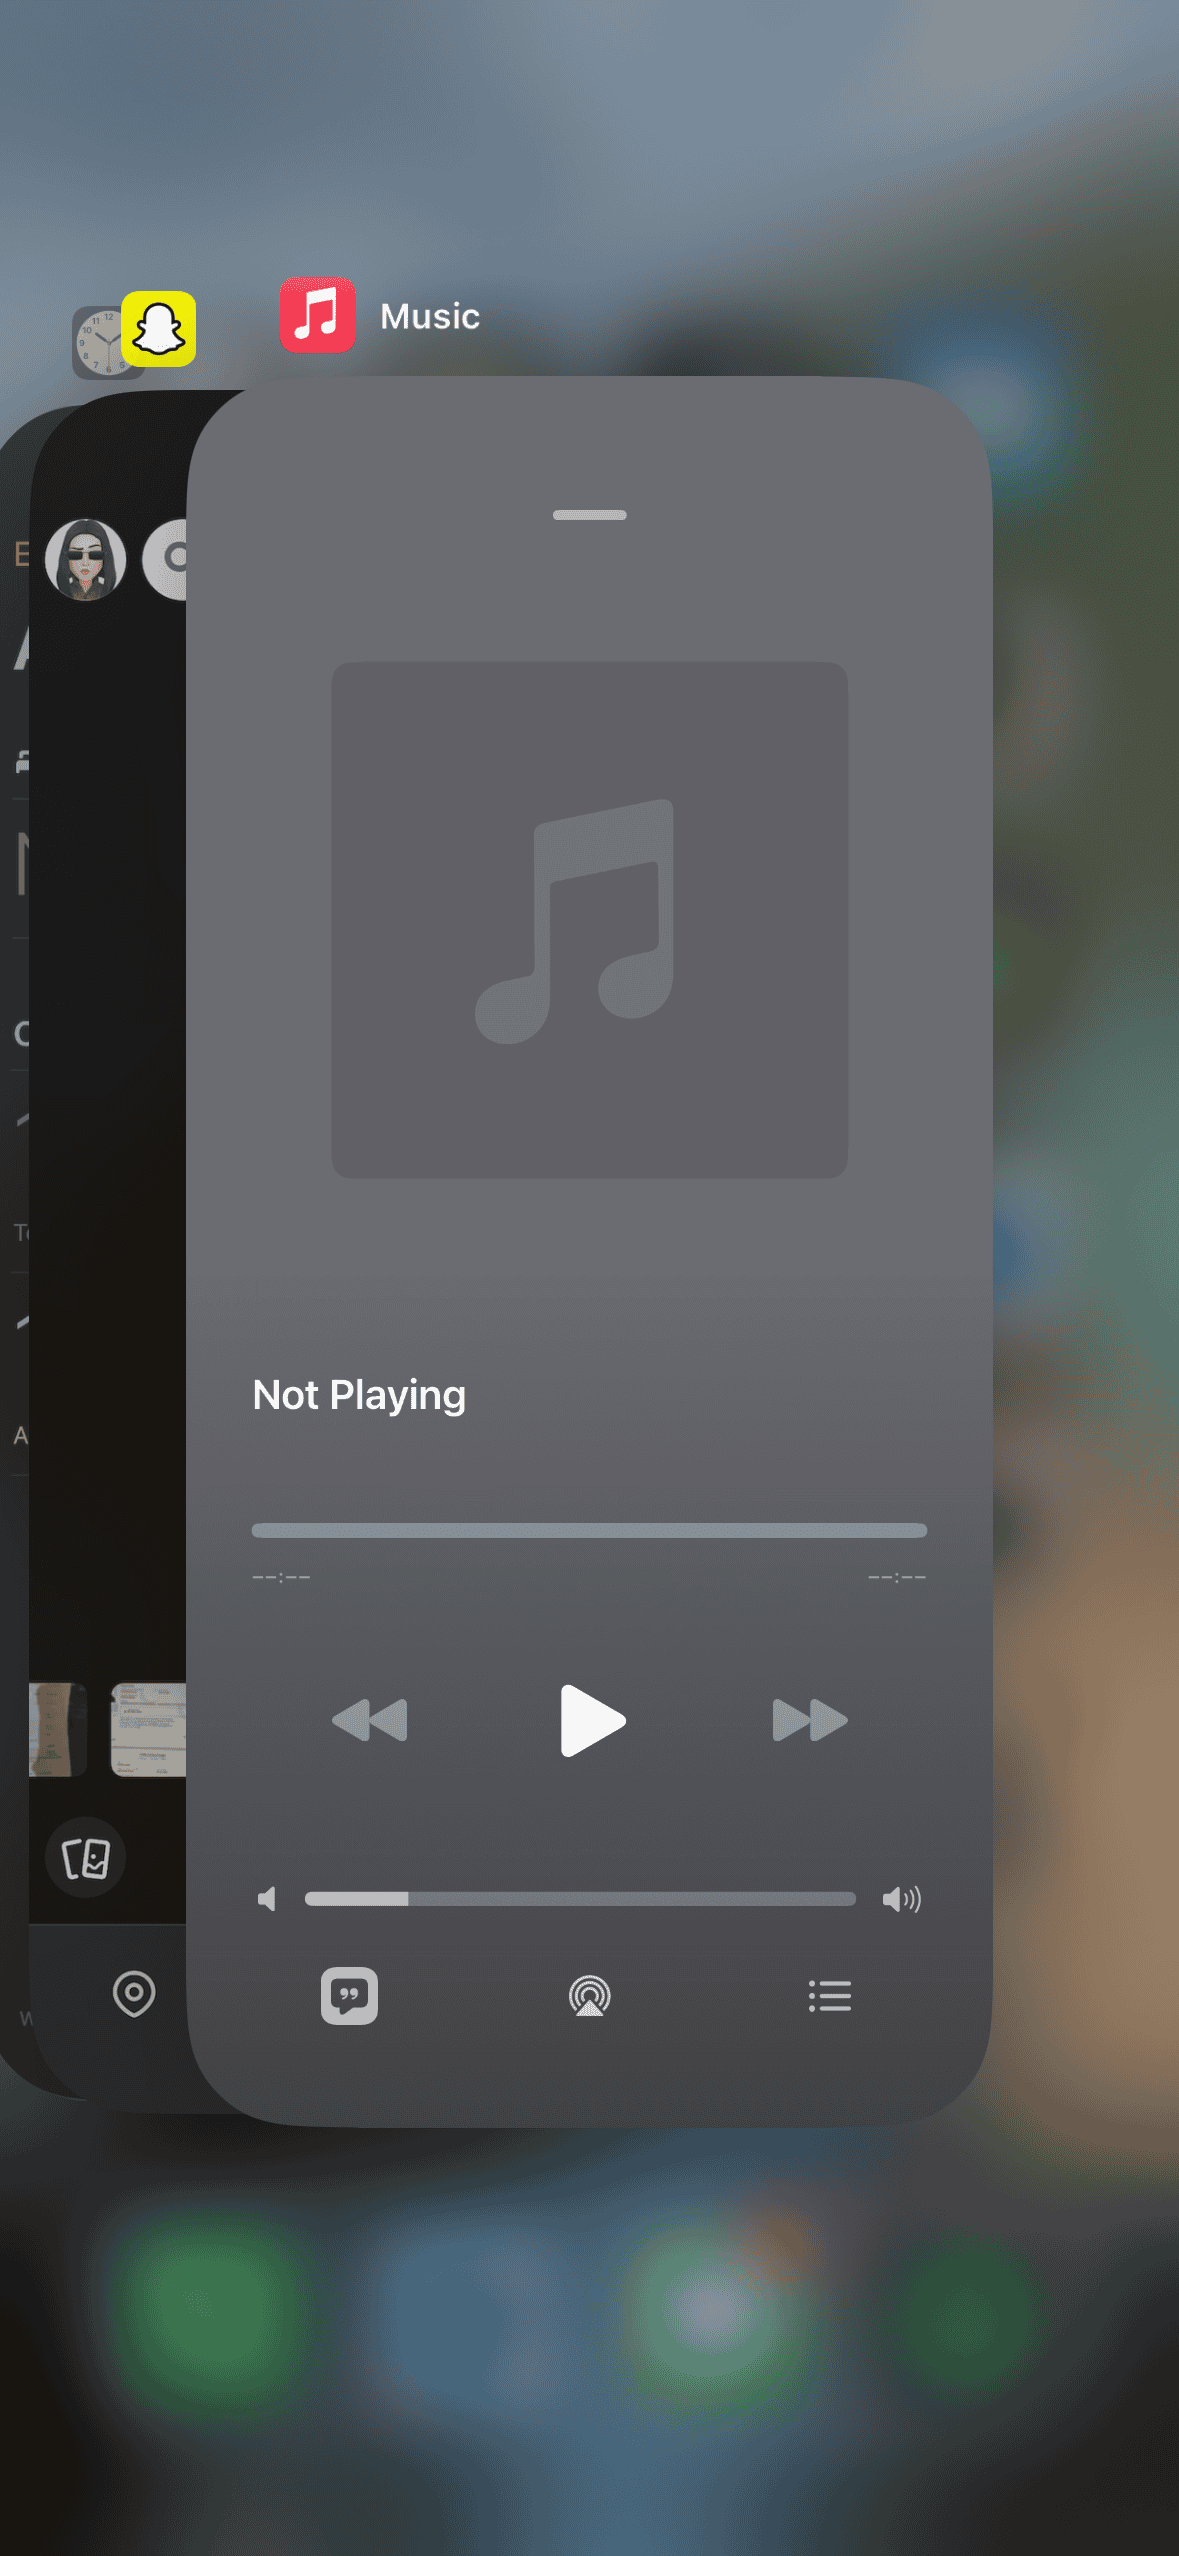 Quit Music app on iPhone